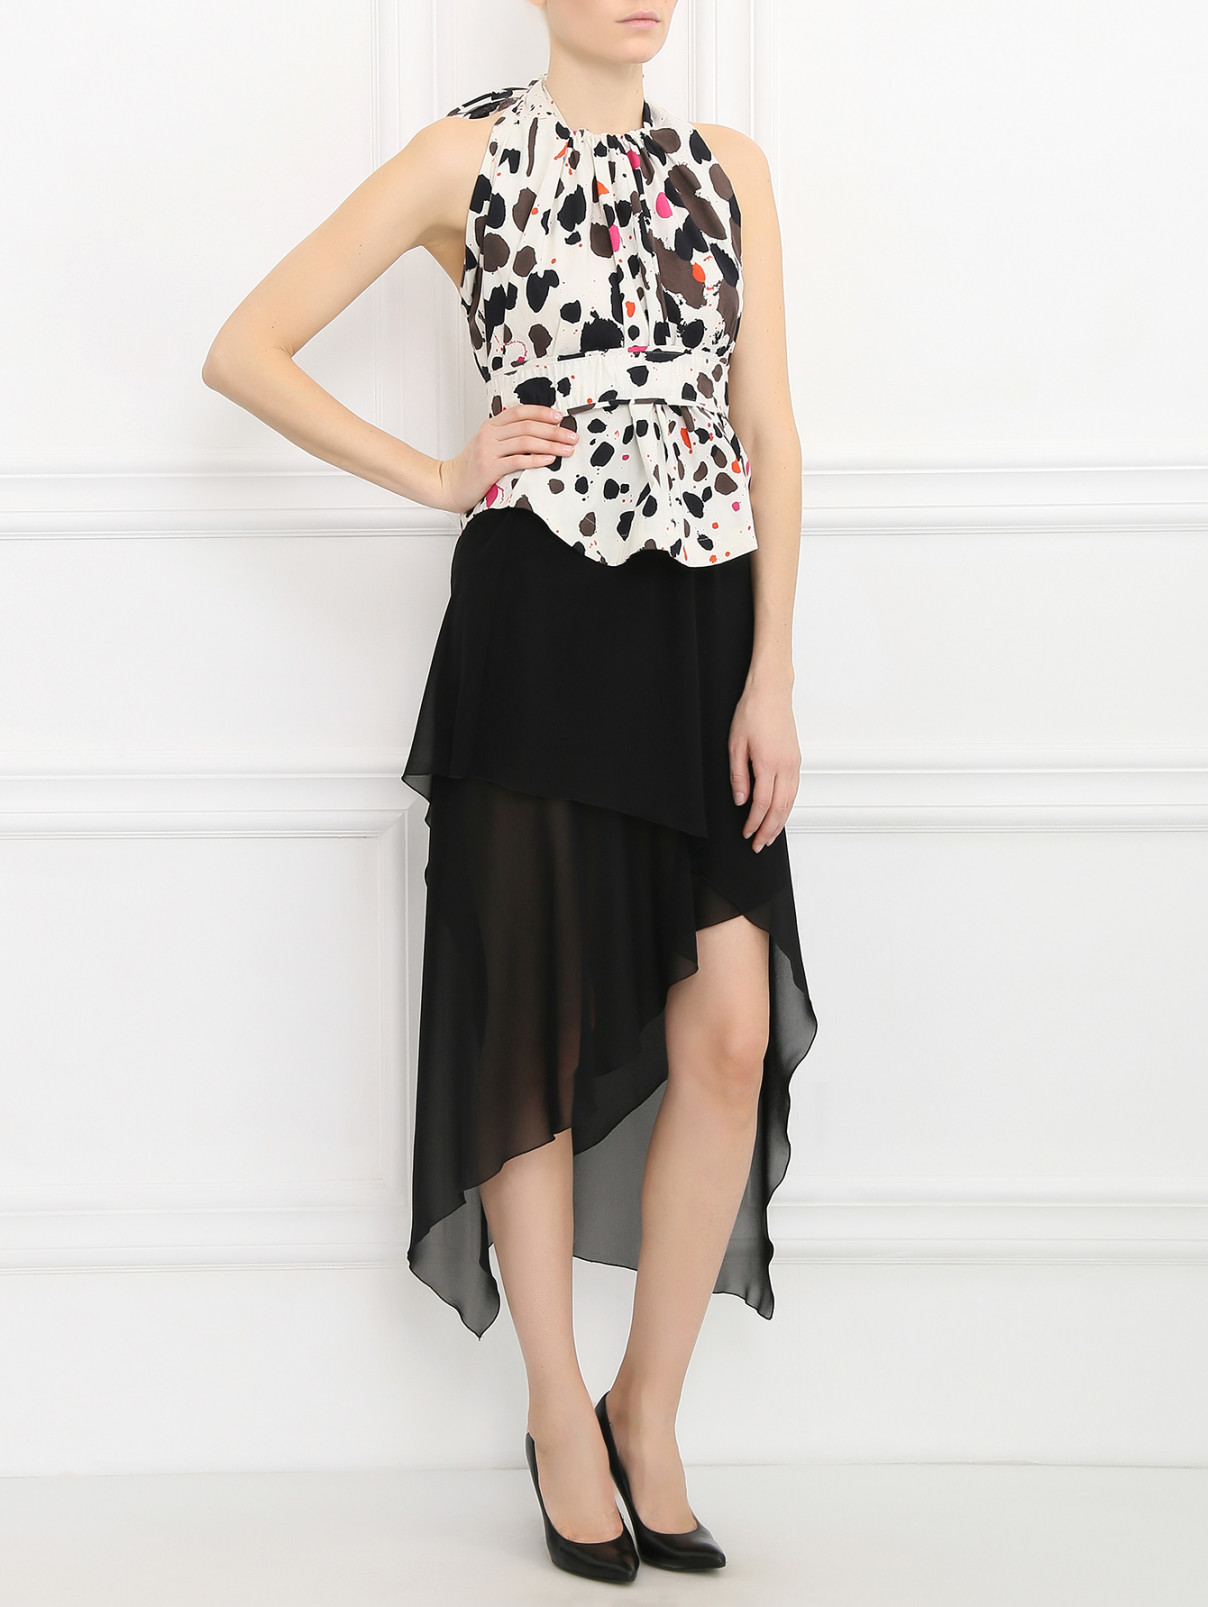 Асимметричная юбка на резинке Isola Marras  –  Модель Общий вид  – Цвет:  Черный